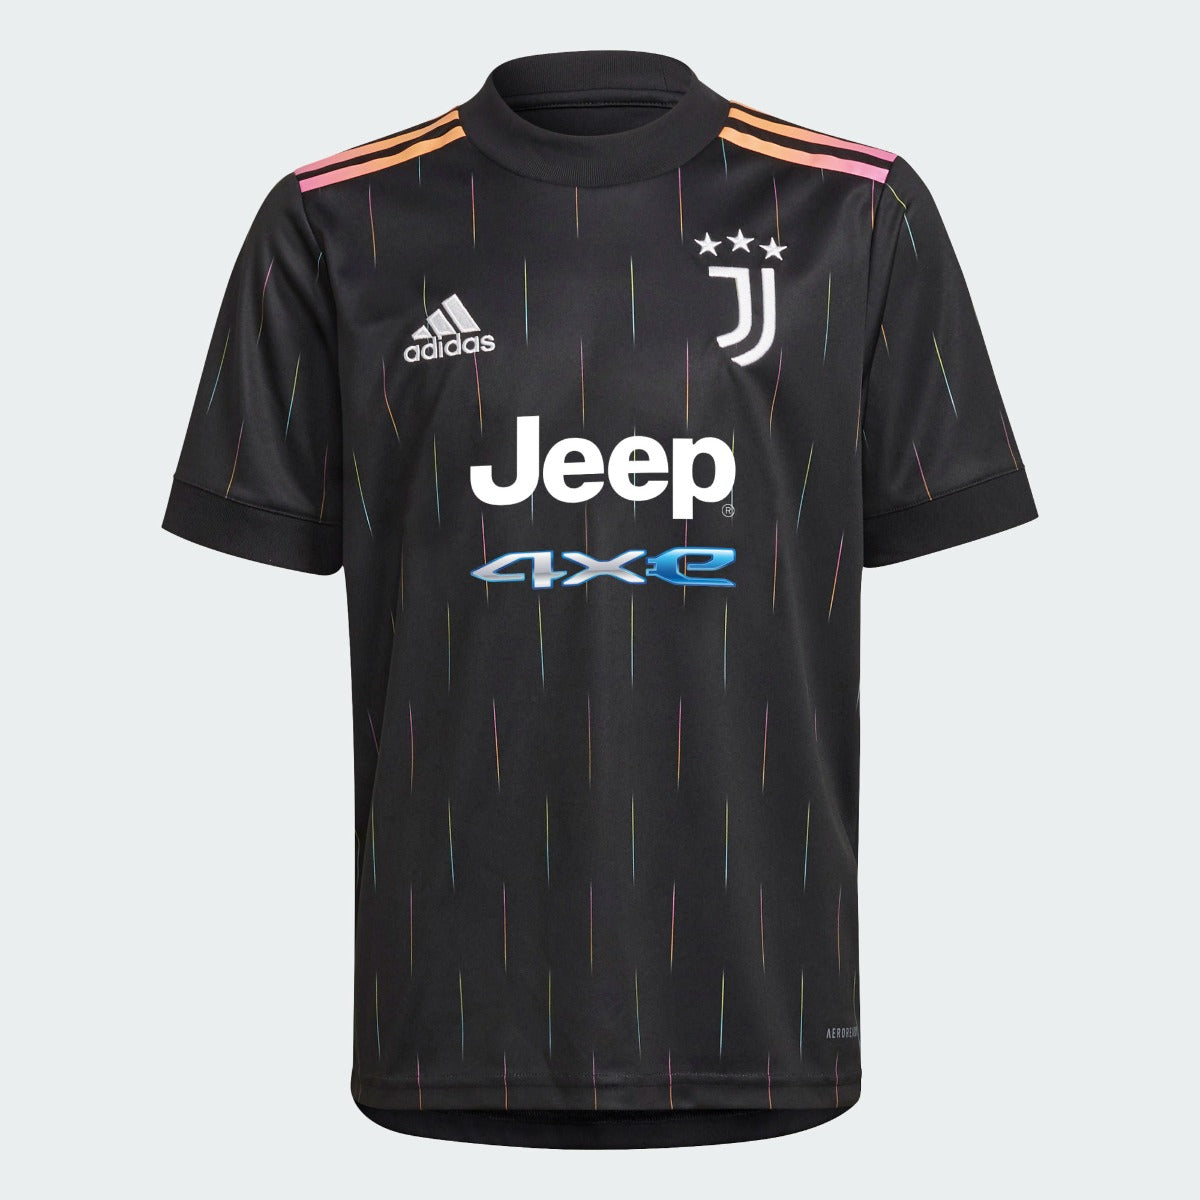 Adidas 2021-22 Juventus Youth Away Jersey - Black